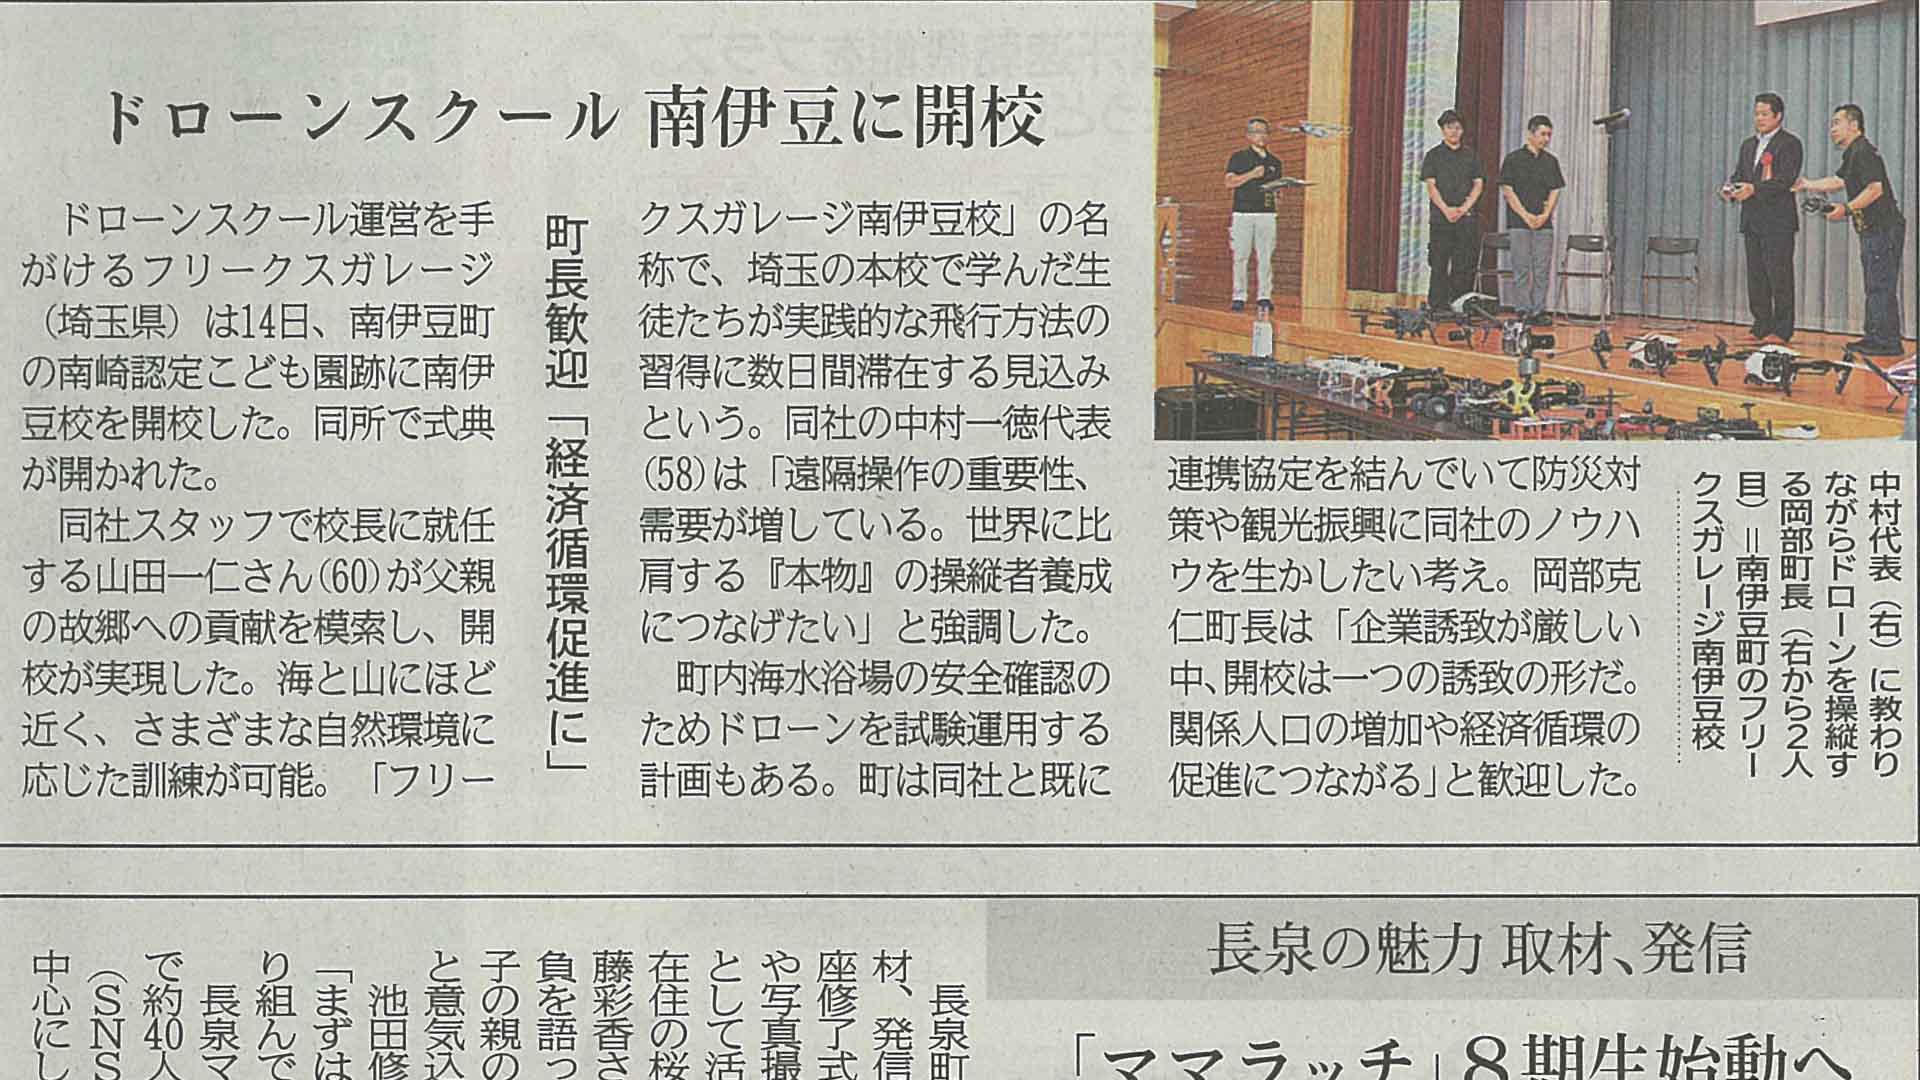 2023年6月15日「静岡新聞」
ドローンスクール南伊豆に開校